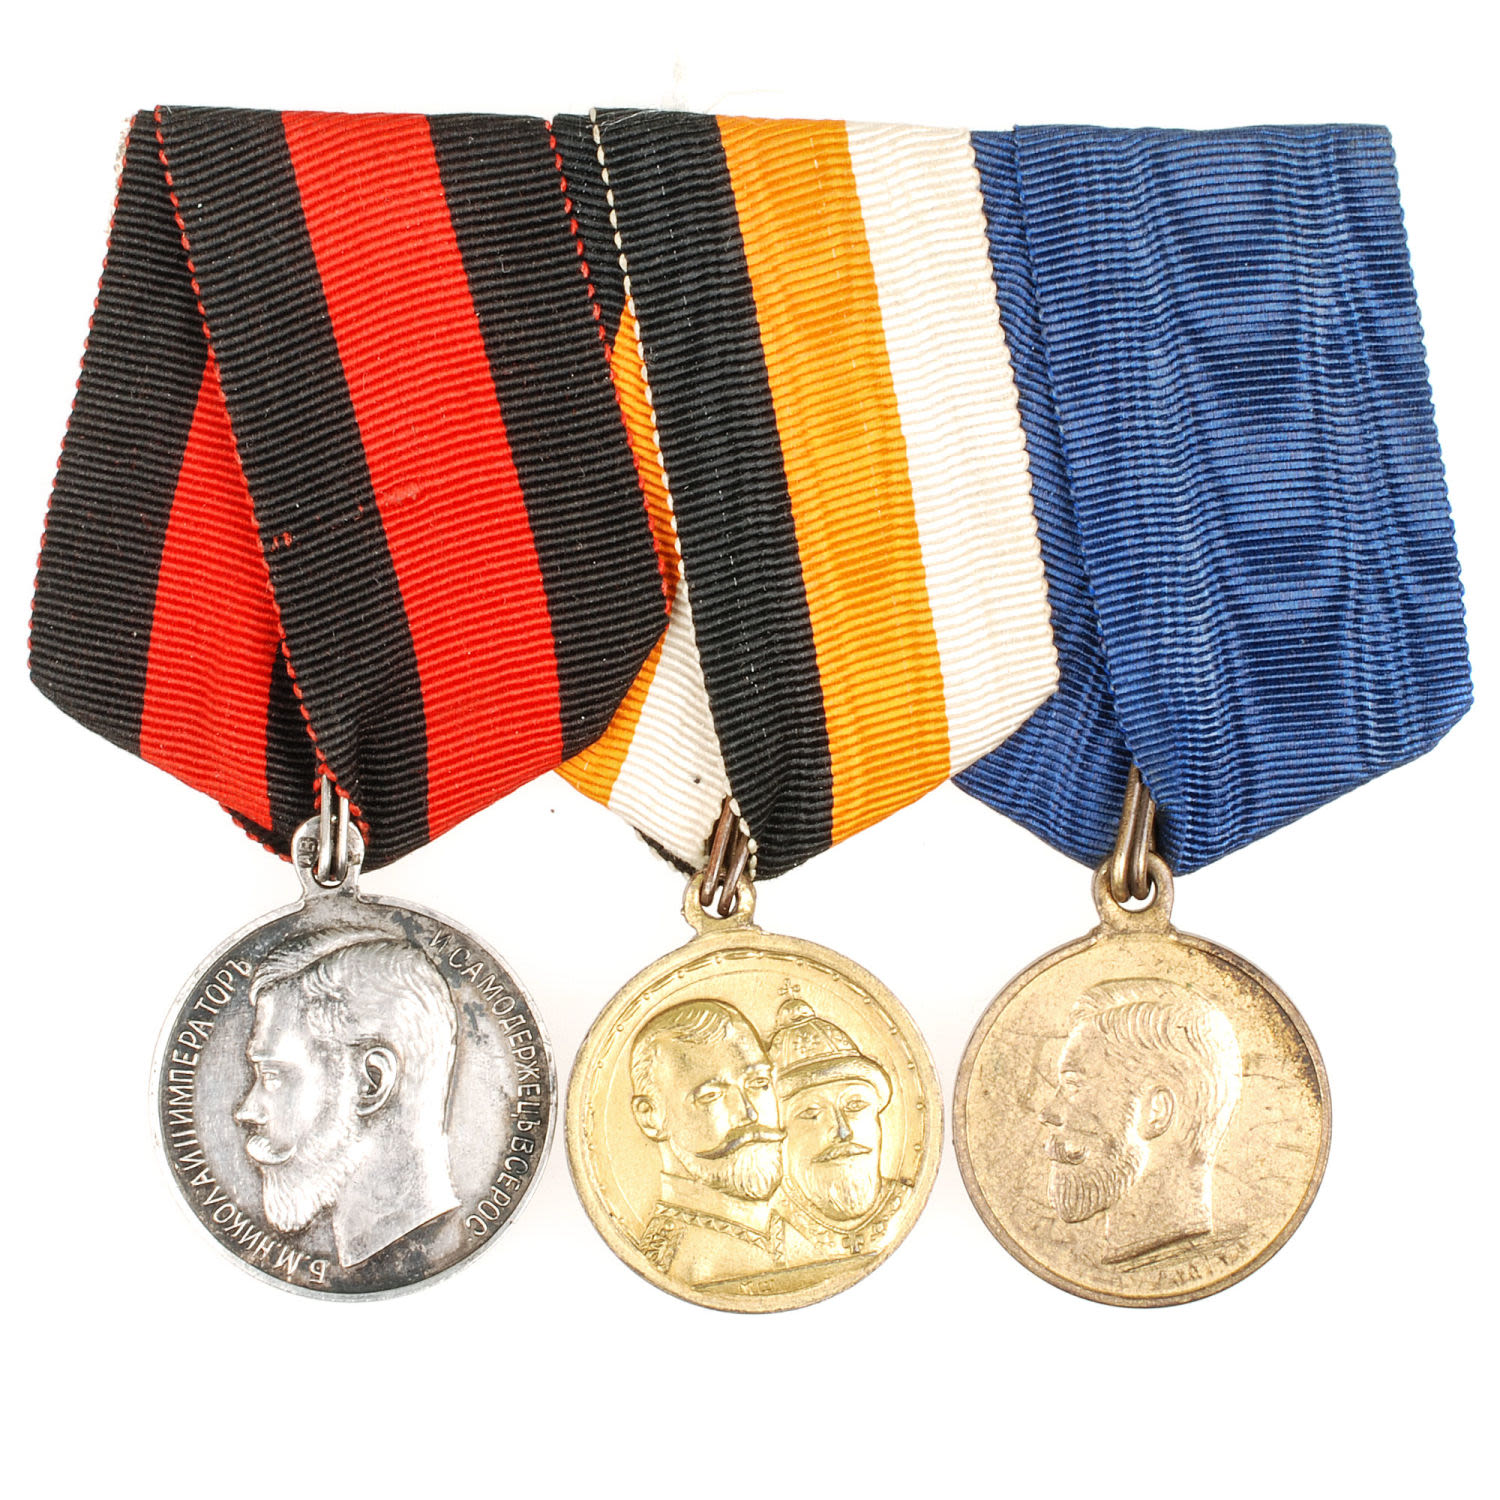 Колодка на три медали периода правления Императора Николая II. Частники.